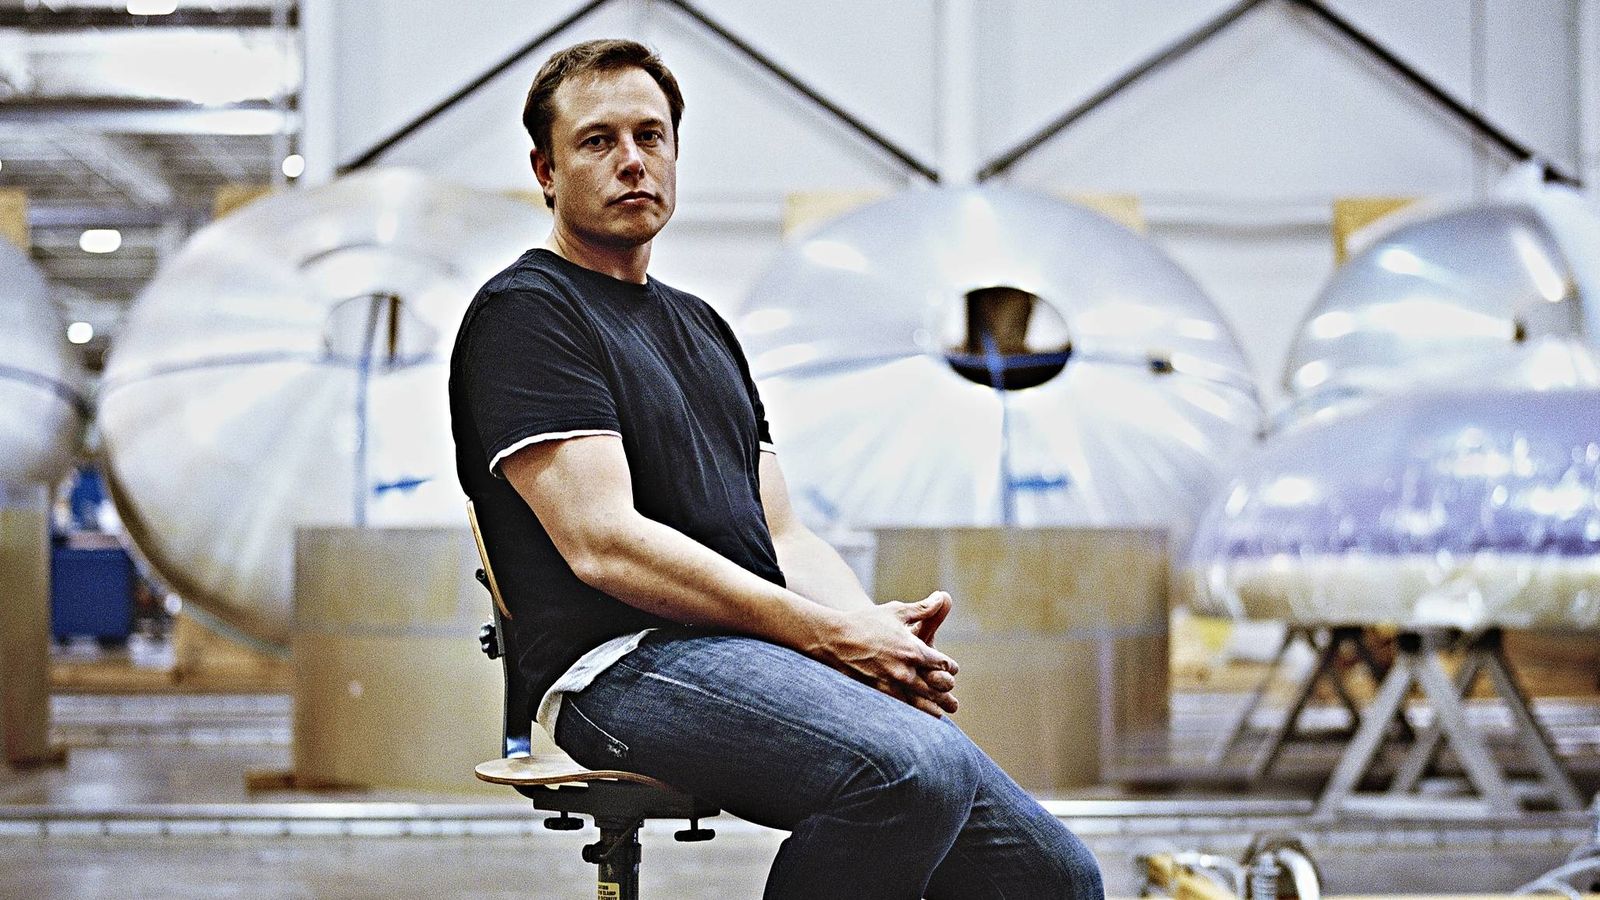 Foto: Elon Musken la sede de Space X, otra de sus empresas